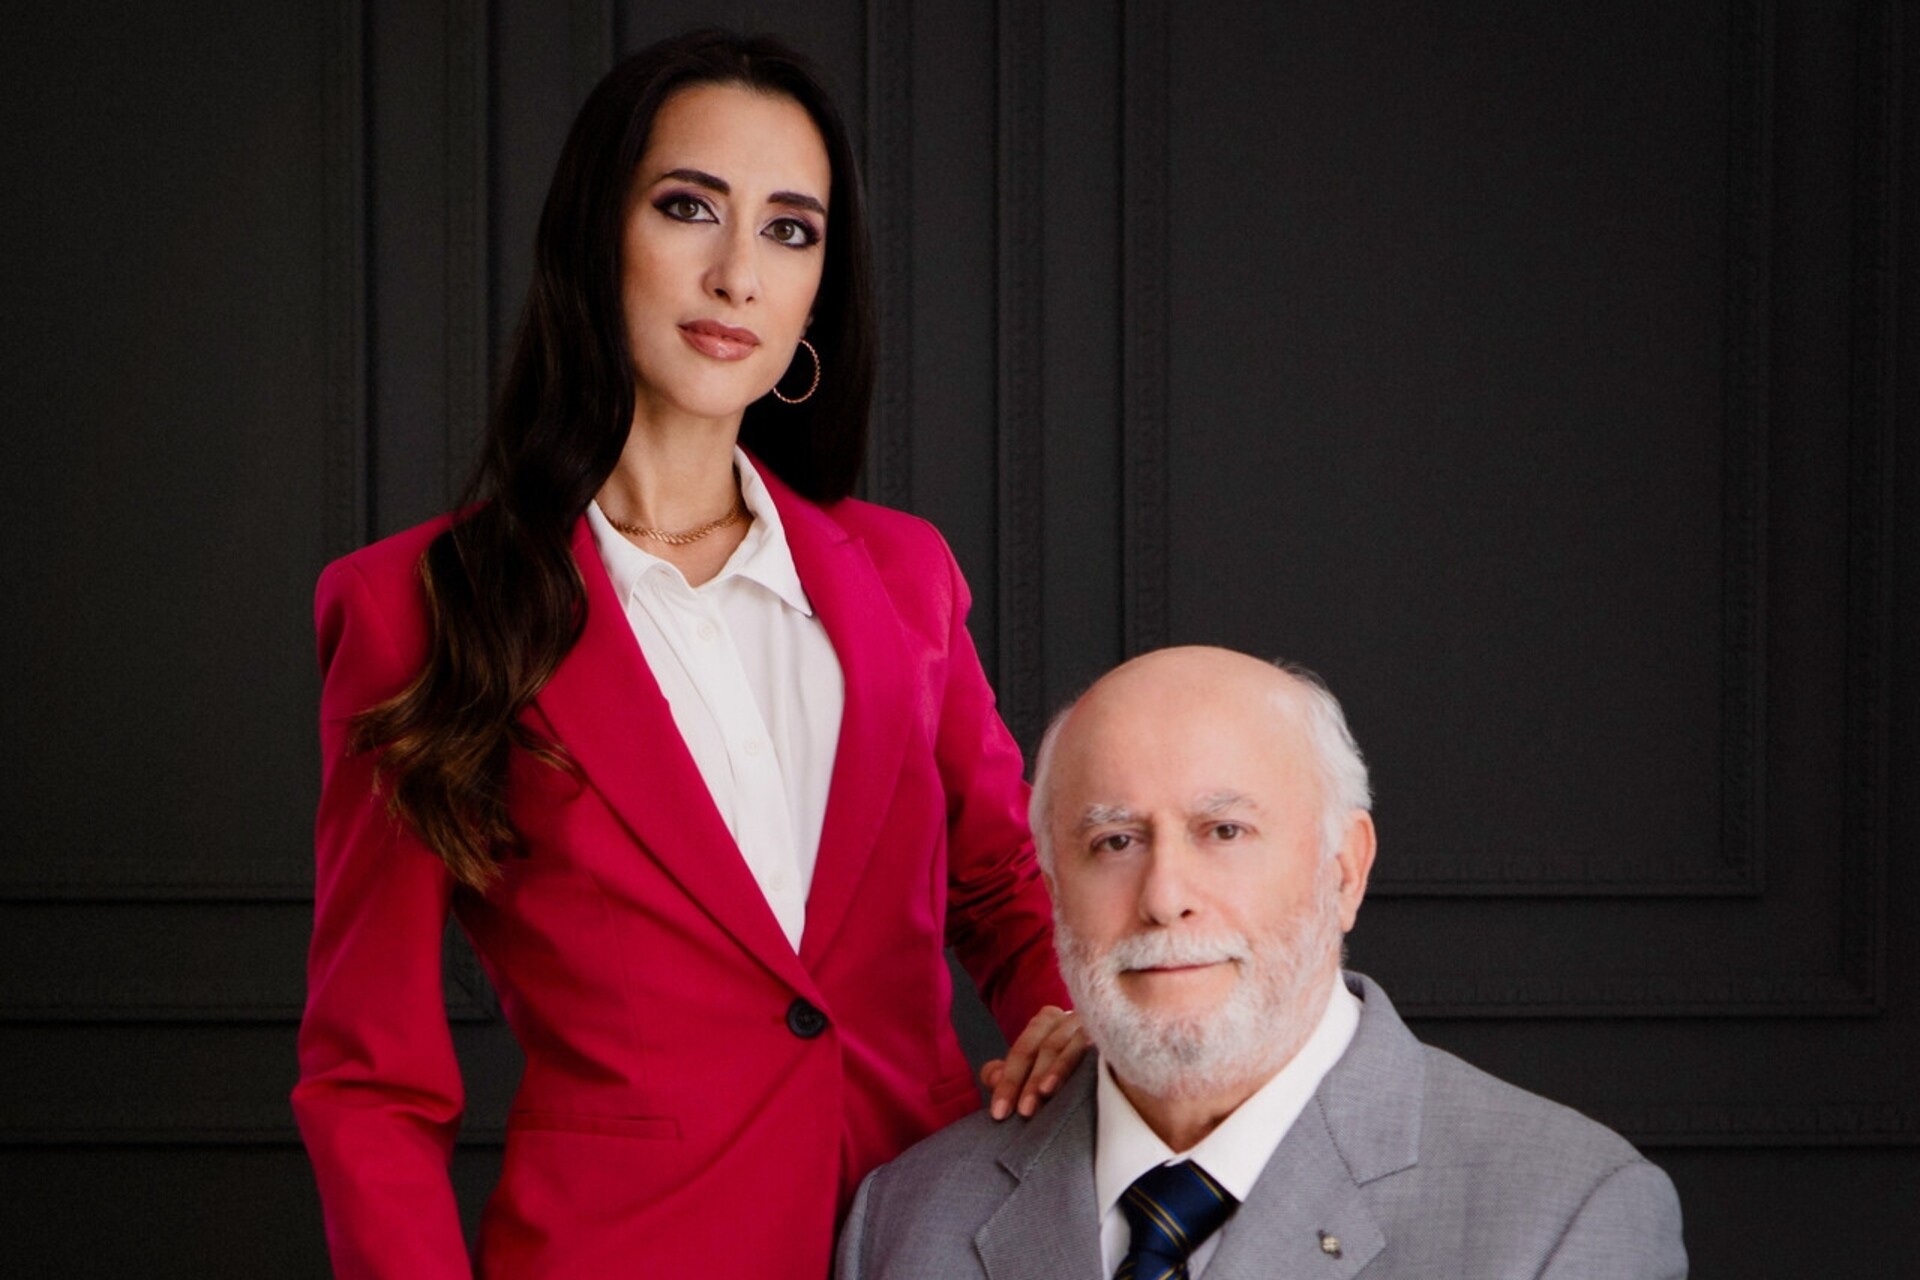 Eleonora Bafunno i jej ojciec Pasquale są właścicielami Grupy Bafunno z siedzibą w Ticino